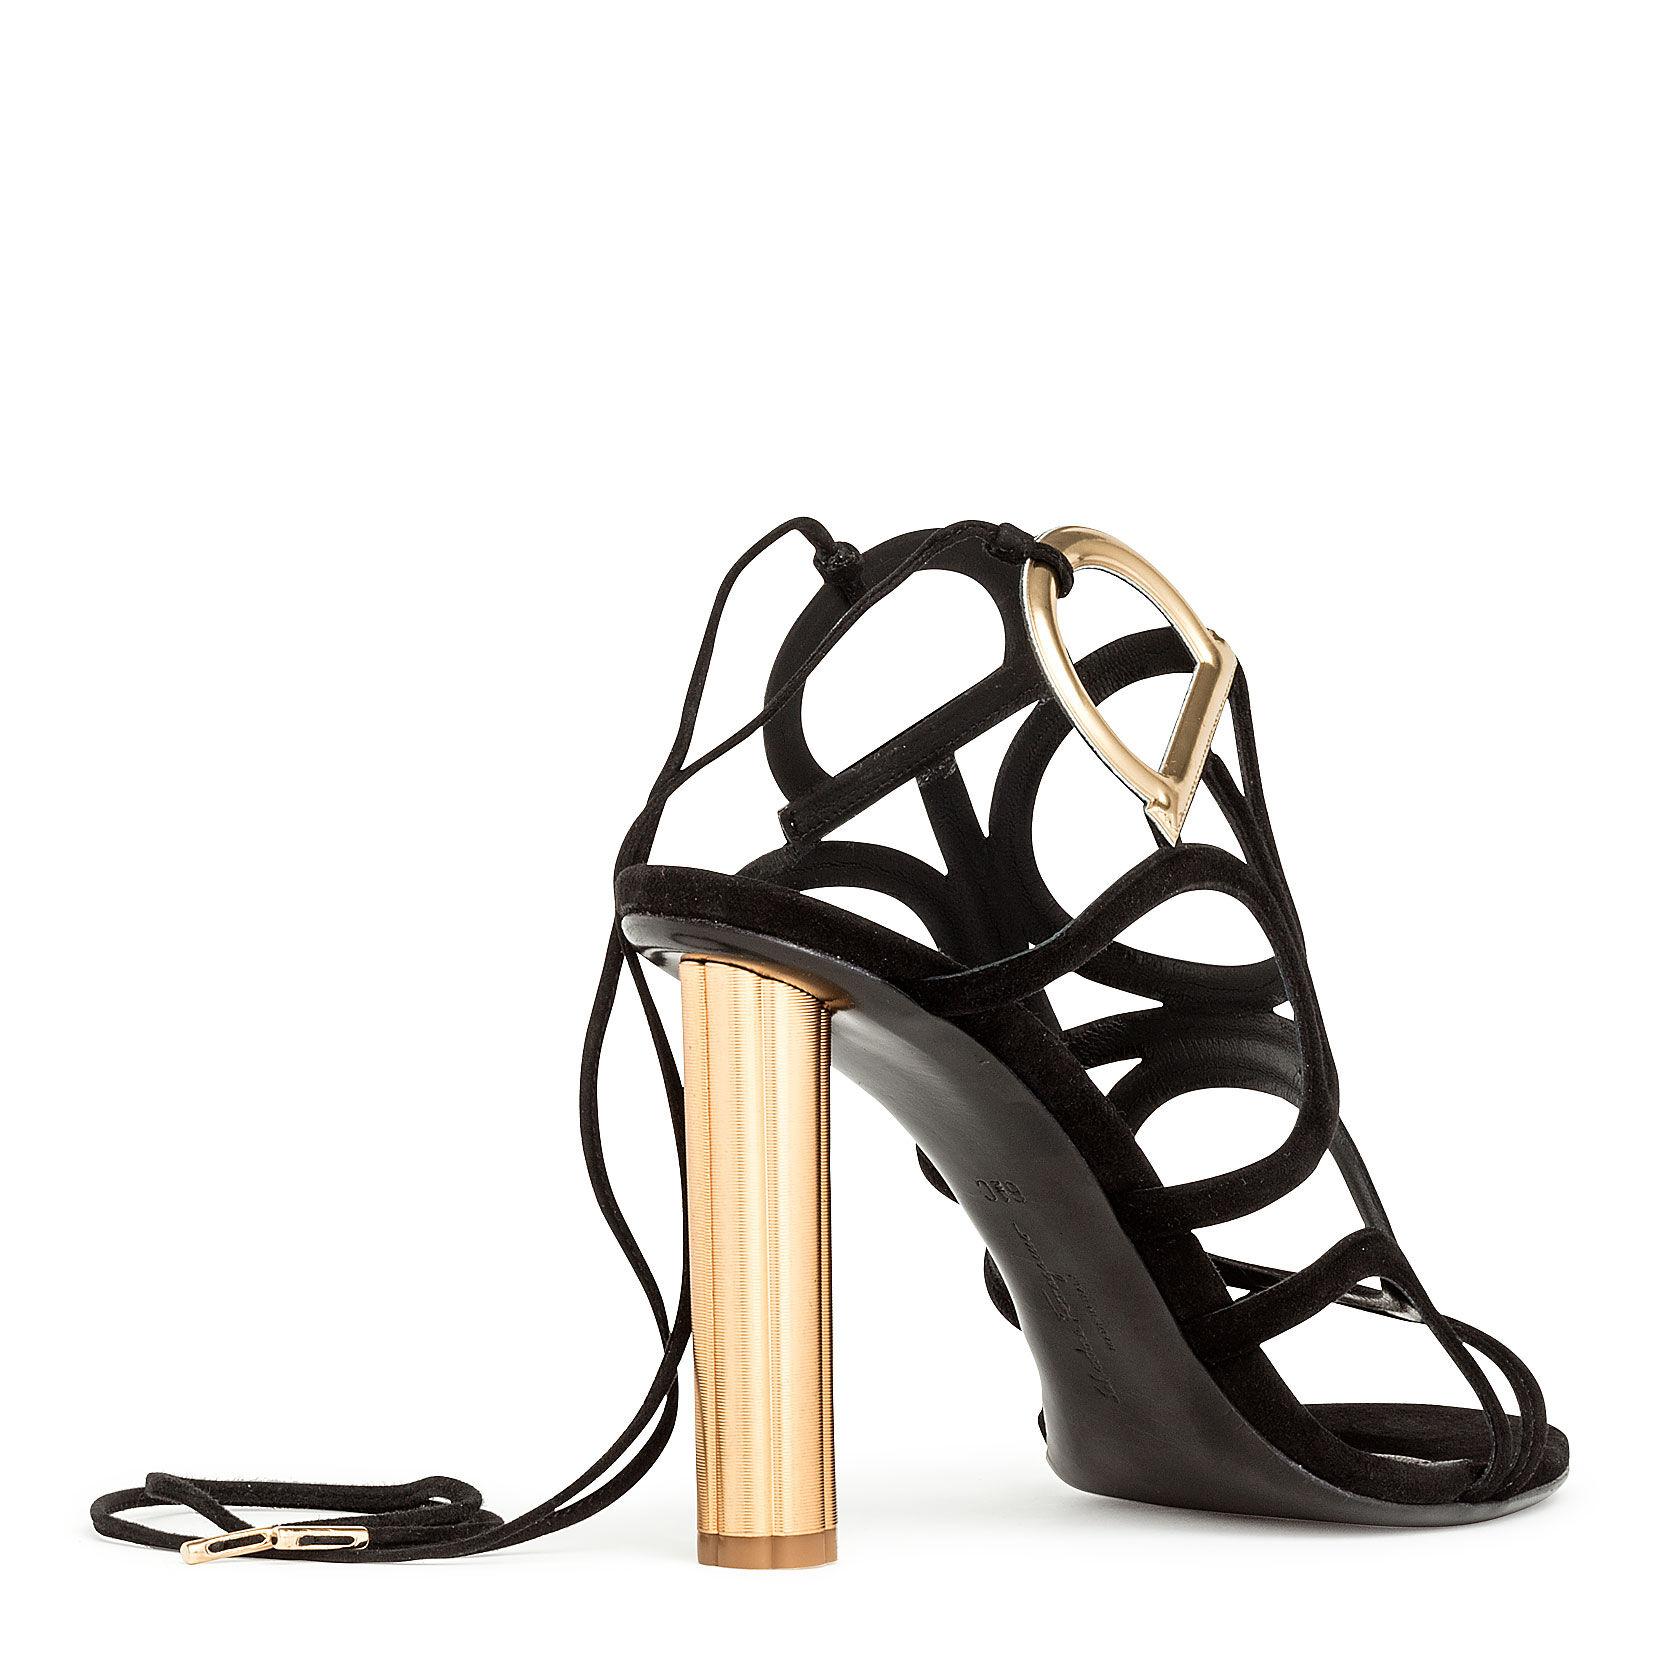 Ferragamo Leather Vinci 105 Black Suede Golden Heel Sandals - Lyst